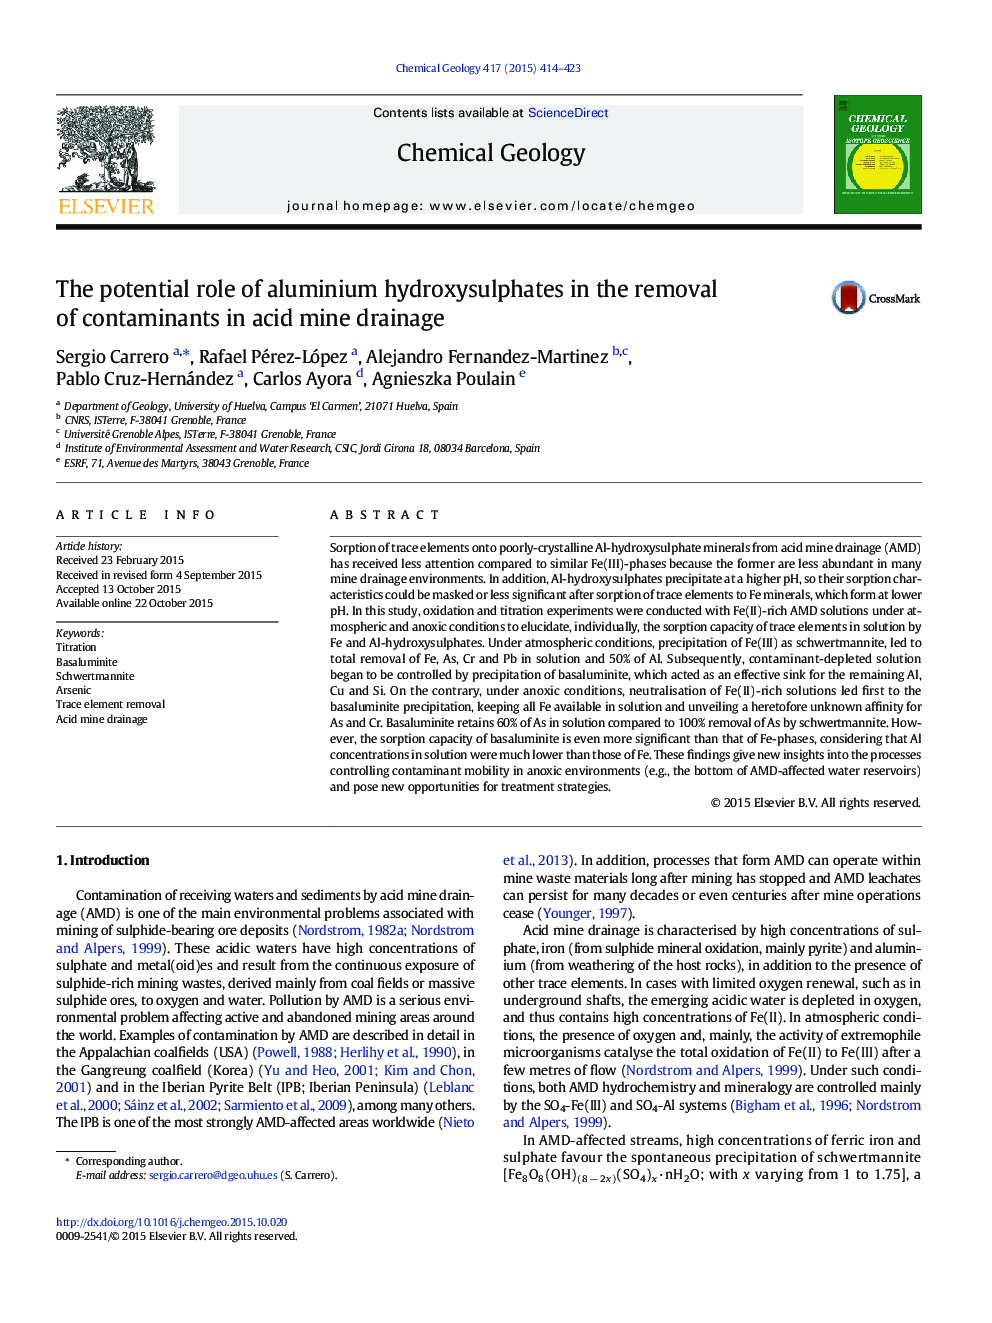 نقش بالقوه هیدروکسید سولفات آلومینیوم در حذف آلاینده ها در زهکشی اسید معدن 